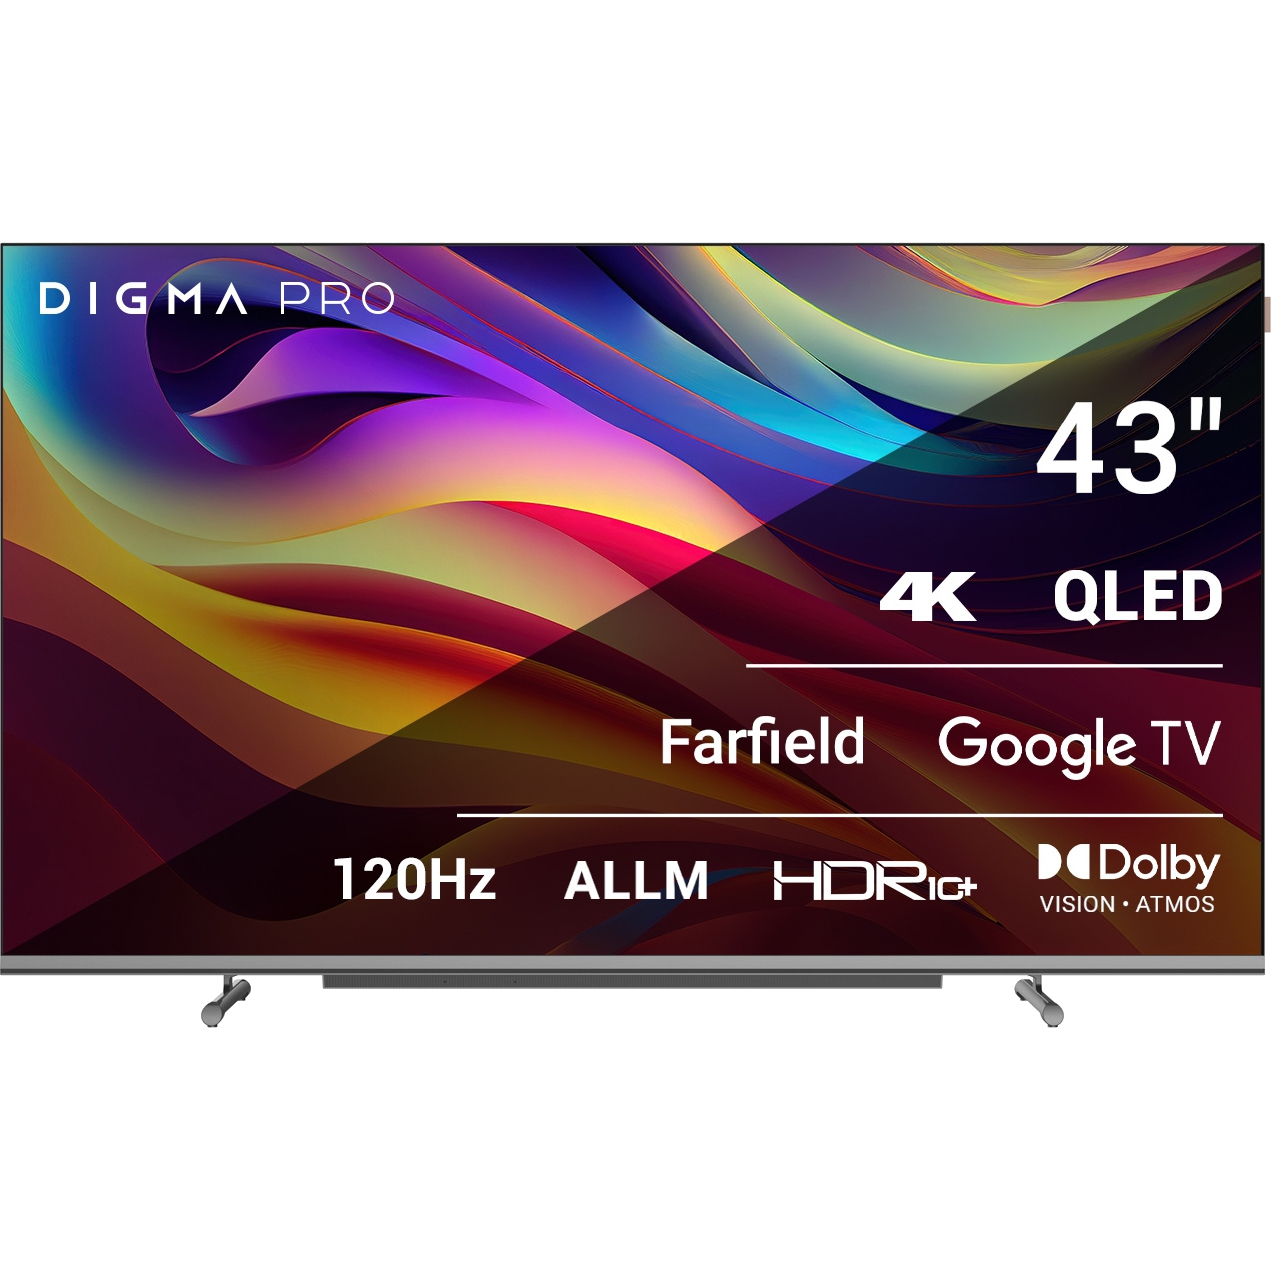 Телевизор Digma Pro 43 43L телевизор digma dm led43mbb21